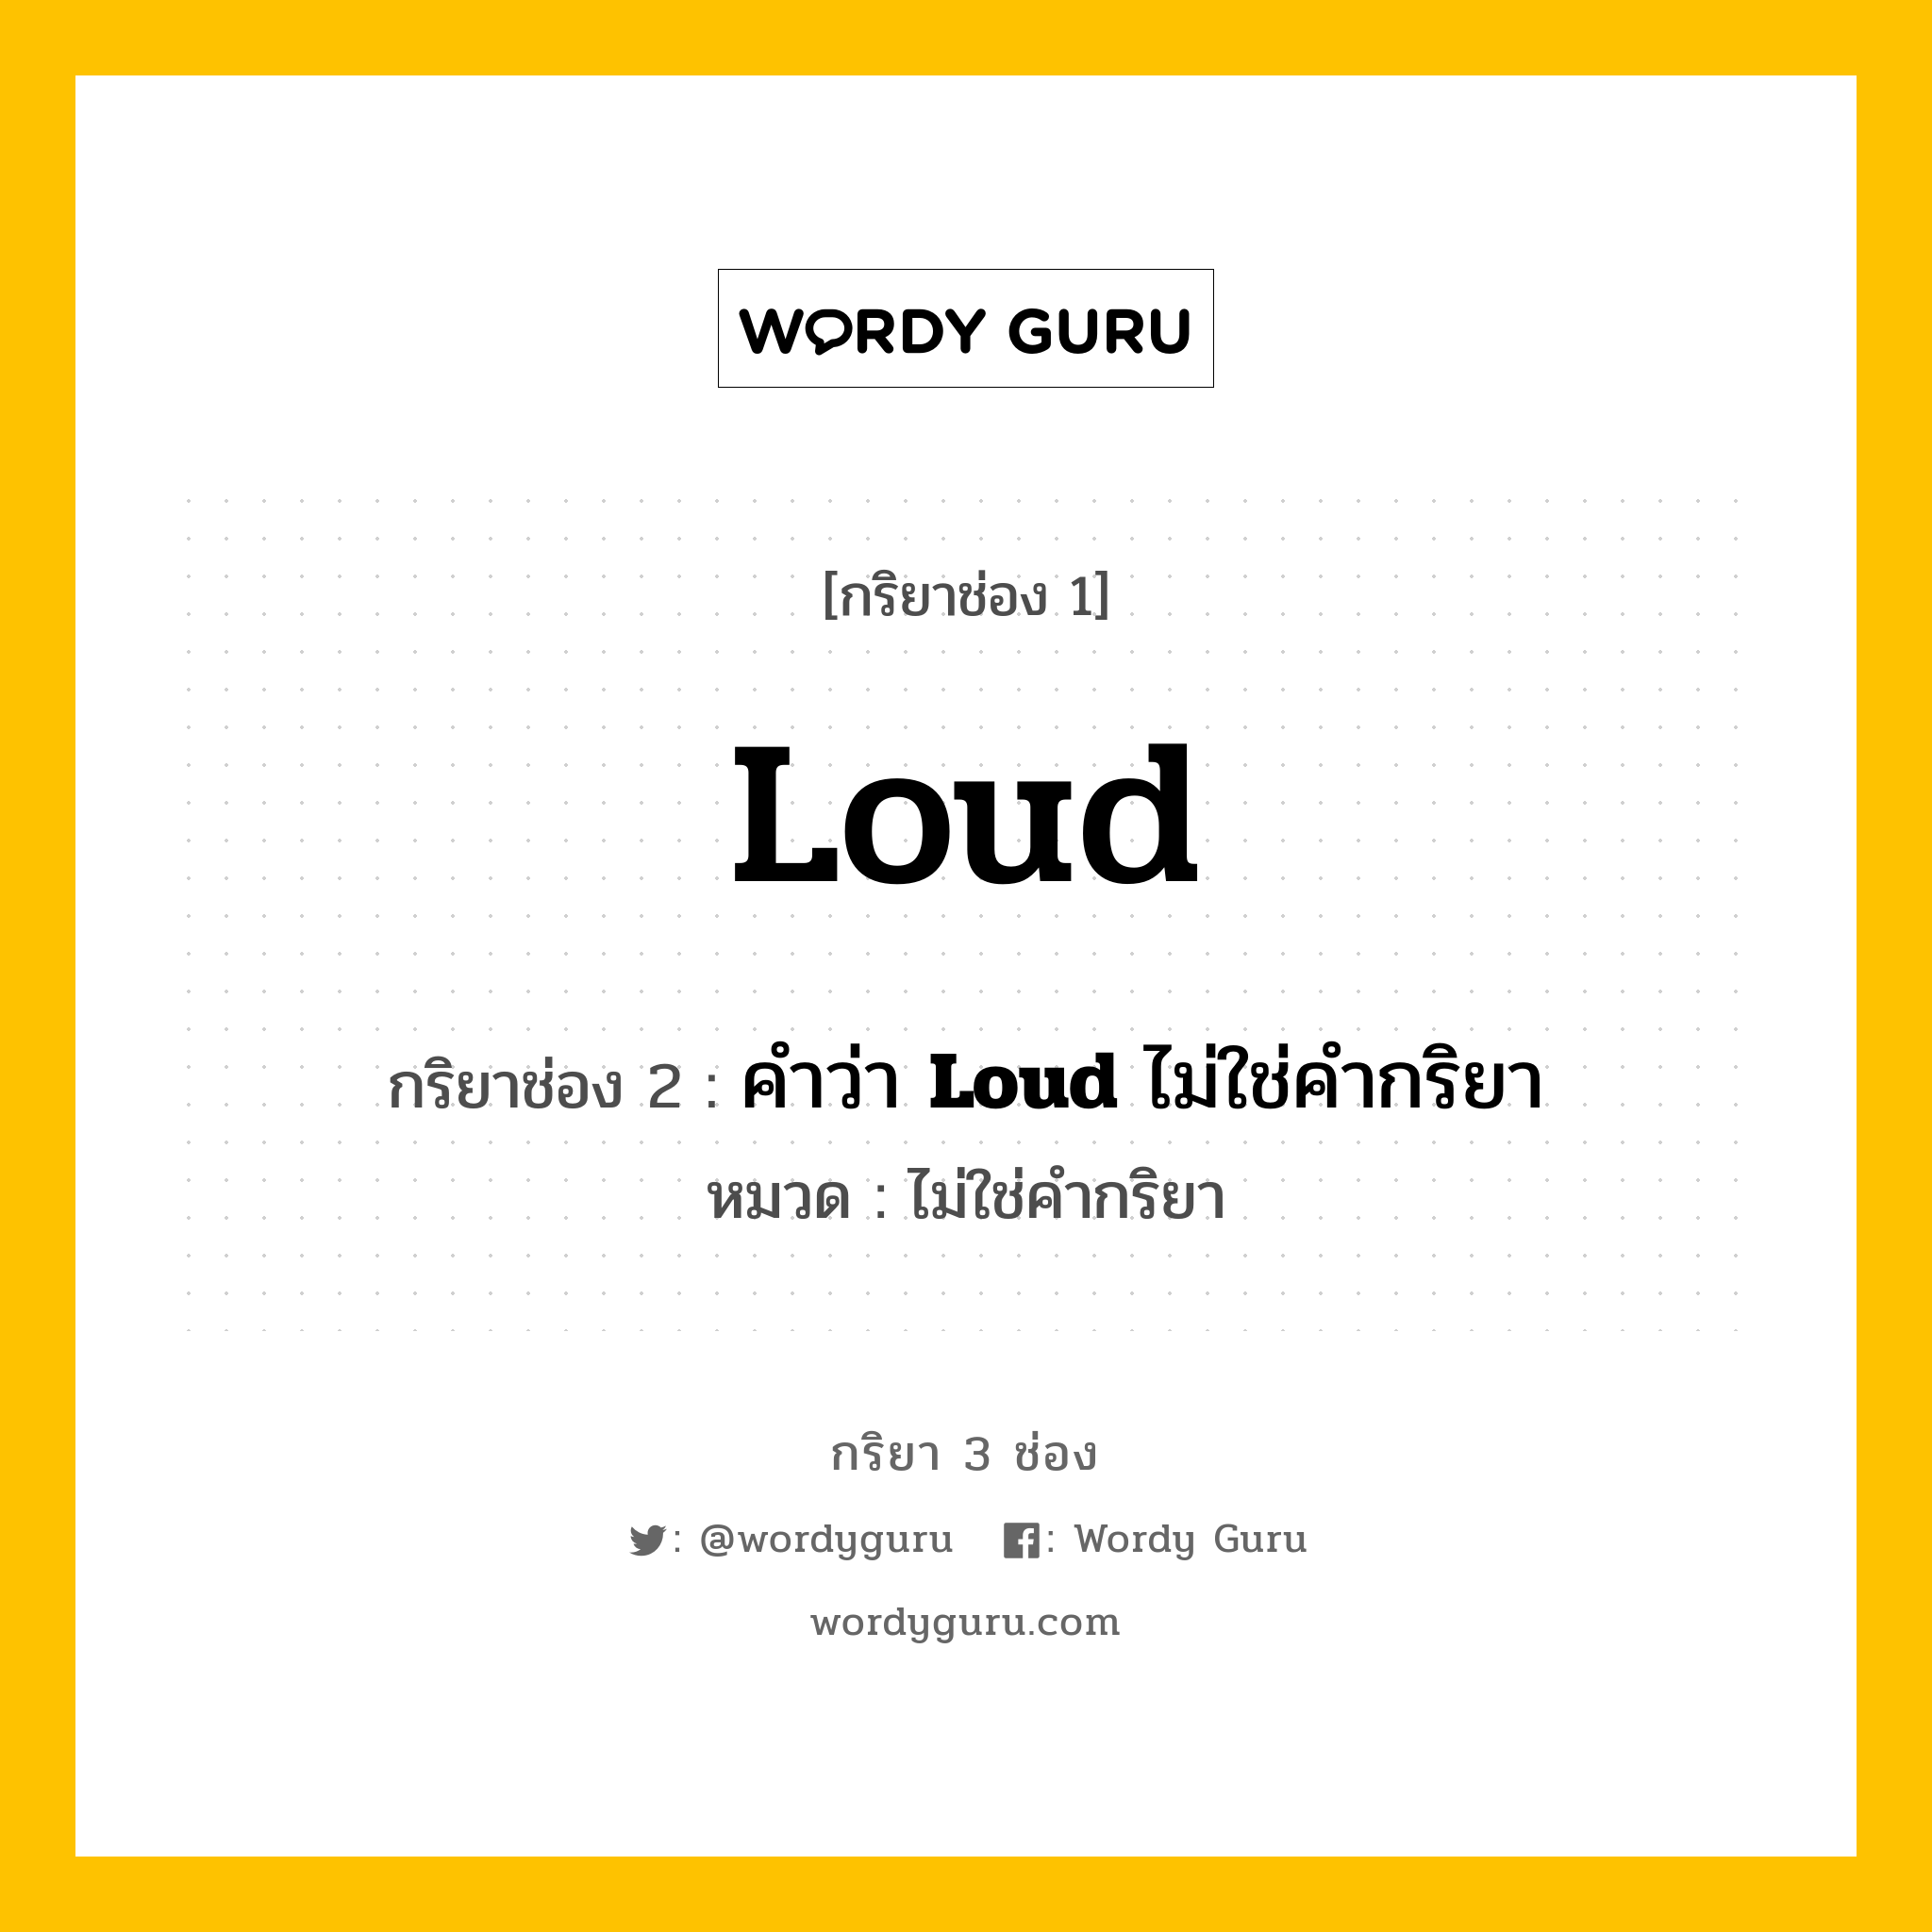 กริยา 3 ช่อง: Loud ช่อง 2 Loud ช่อง 3 คืออะไร, กริยาช่อง 1 Loud กริยาช่อง 2 คำว่า <b>Loud</b> ไม่ใช่คำกริยา หมวด ไม่ใช่คำกริยา หมวด ไม่ใช่คำกริยา